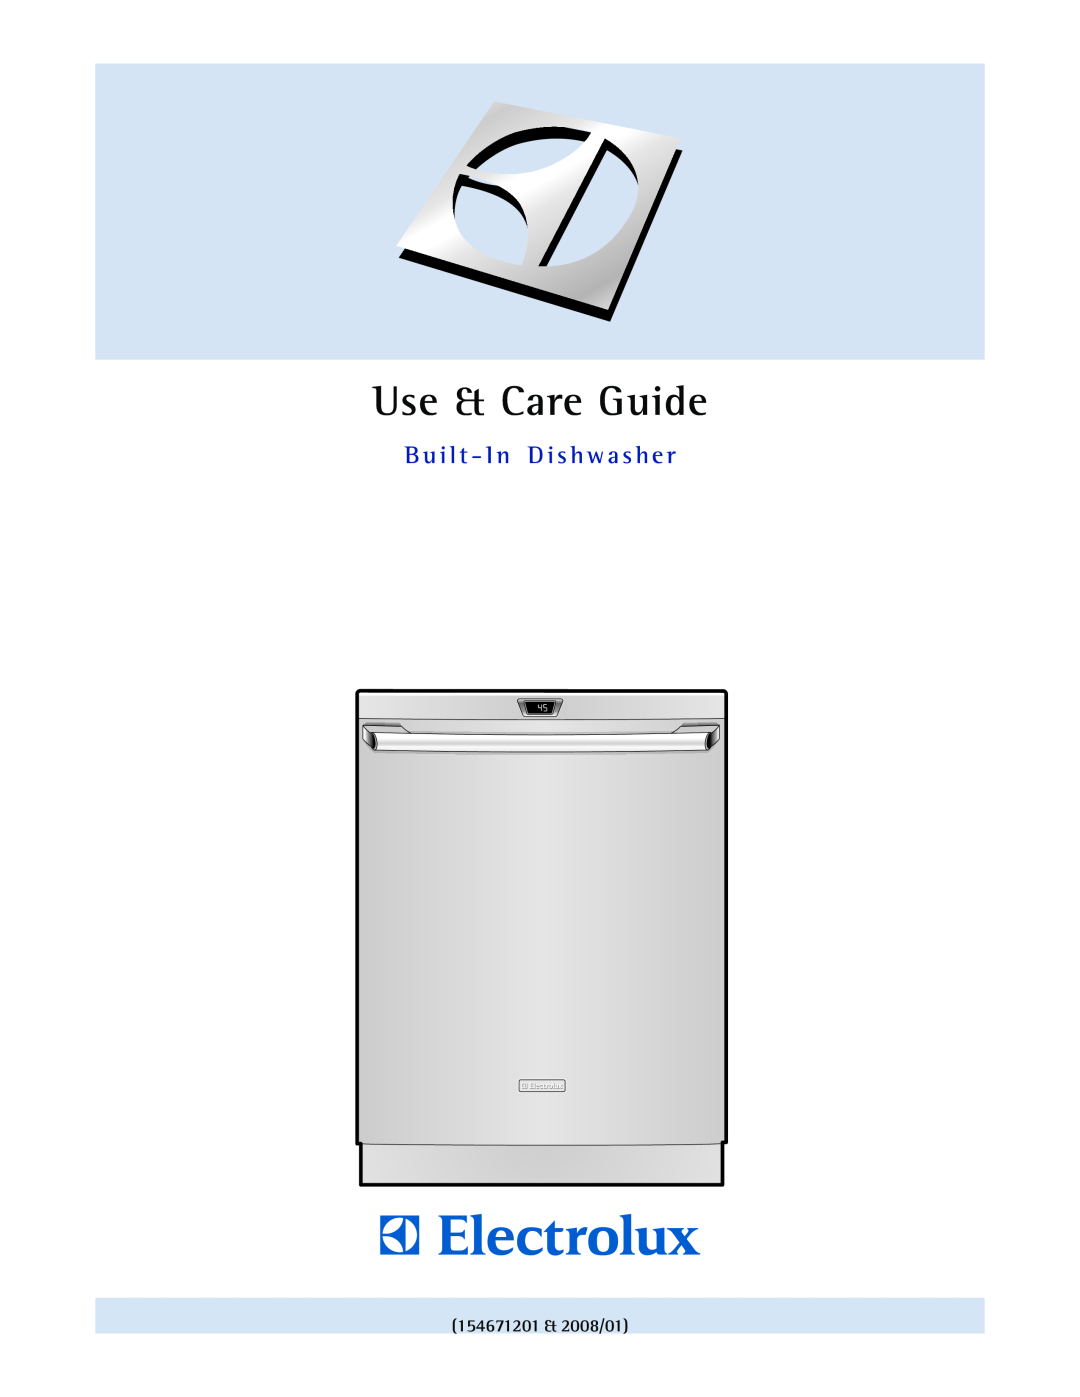 Electrolux EIDW6105 manual 154671201 & 2008/01, Use & Care Guide, Guia de Uso y Cuidado Lavavajillas Empotrado 